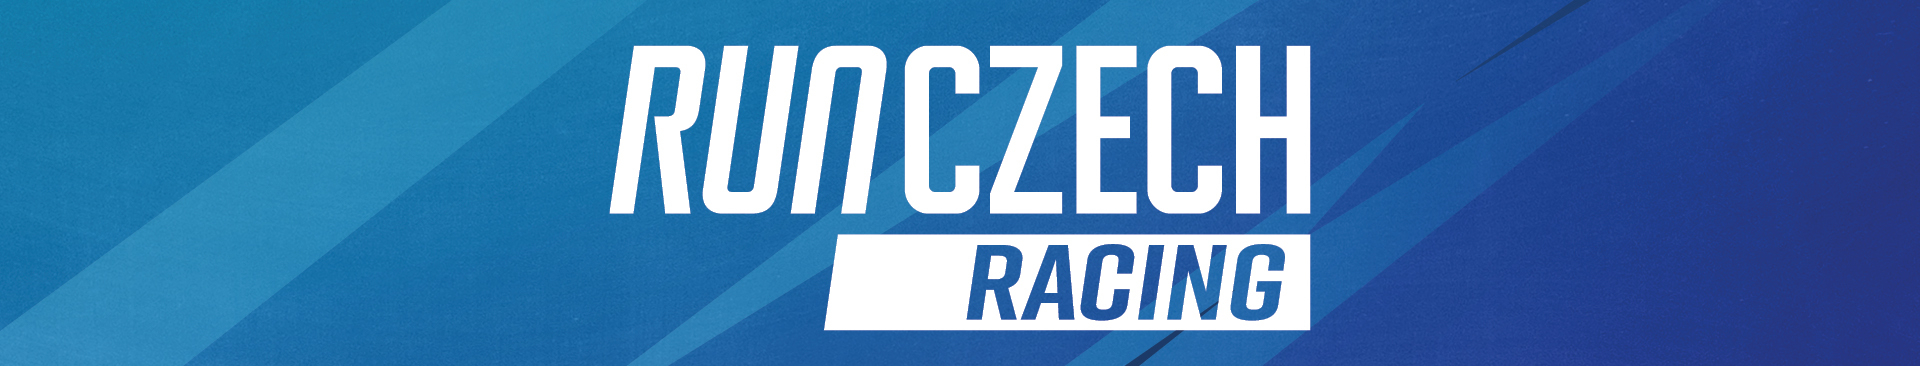 RunCzech Racing new visual